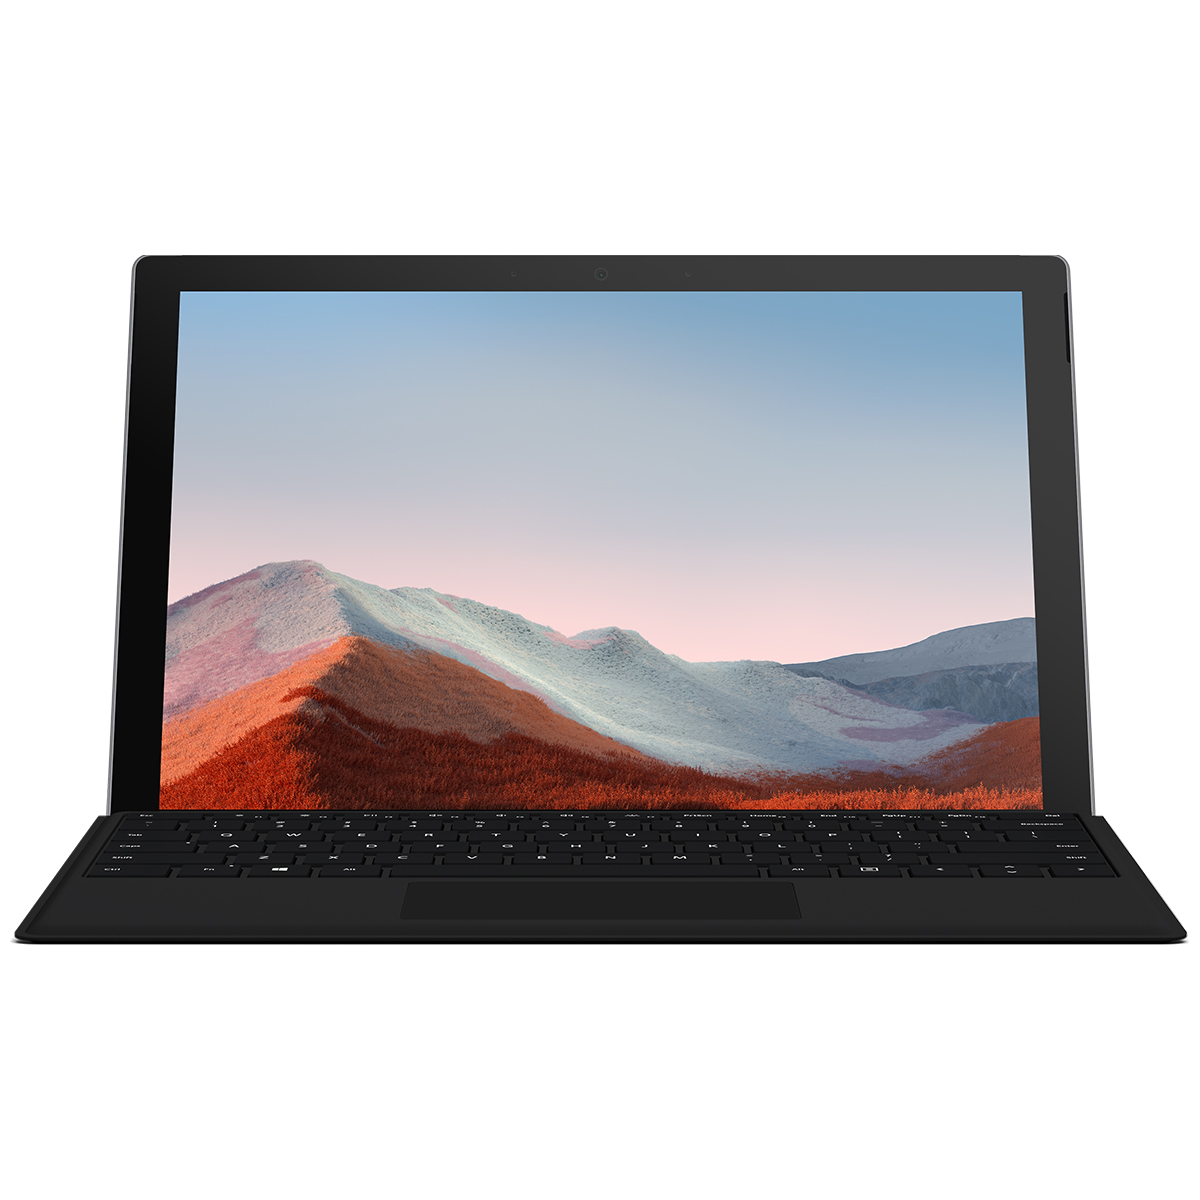 تبلت مایکروسافت مدل Surface Pro 7 Plus-i7 ظرفیت 256 گیگابایت و 16 گیگابایترم به همراه کیبورد Black Type Cover - دیجی ریویو